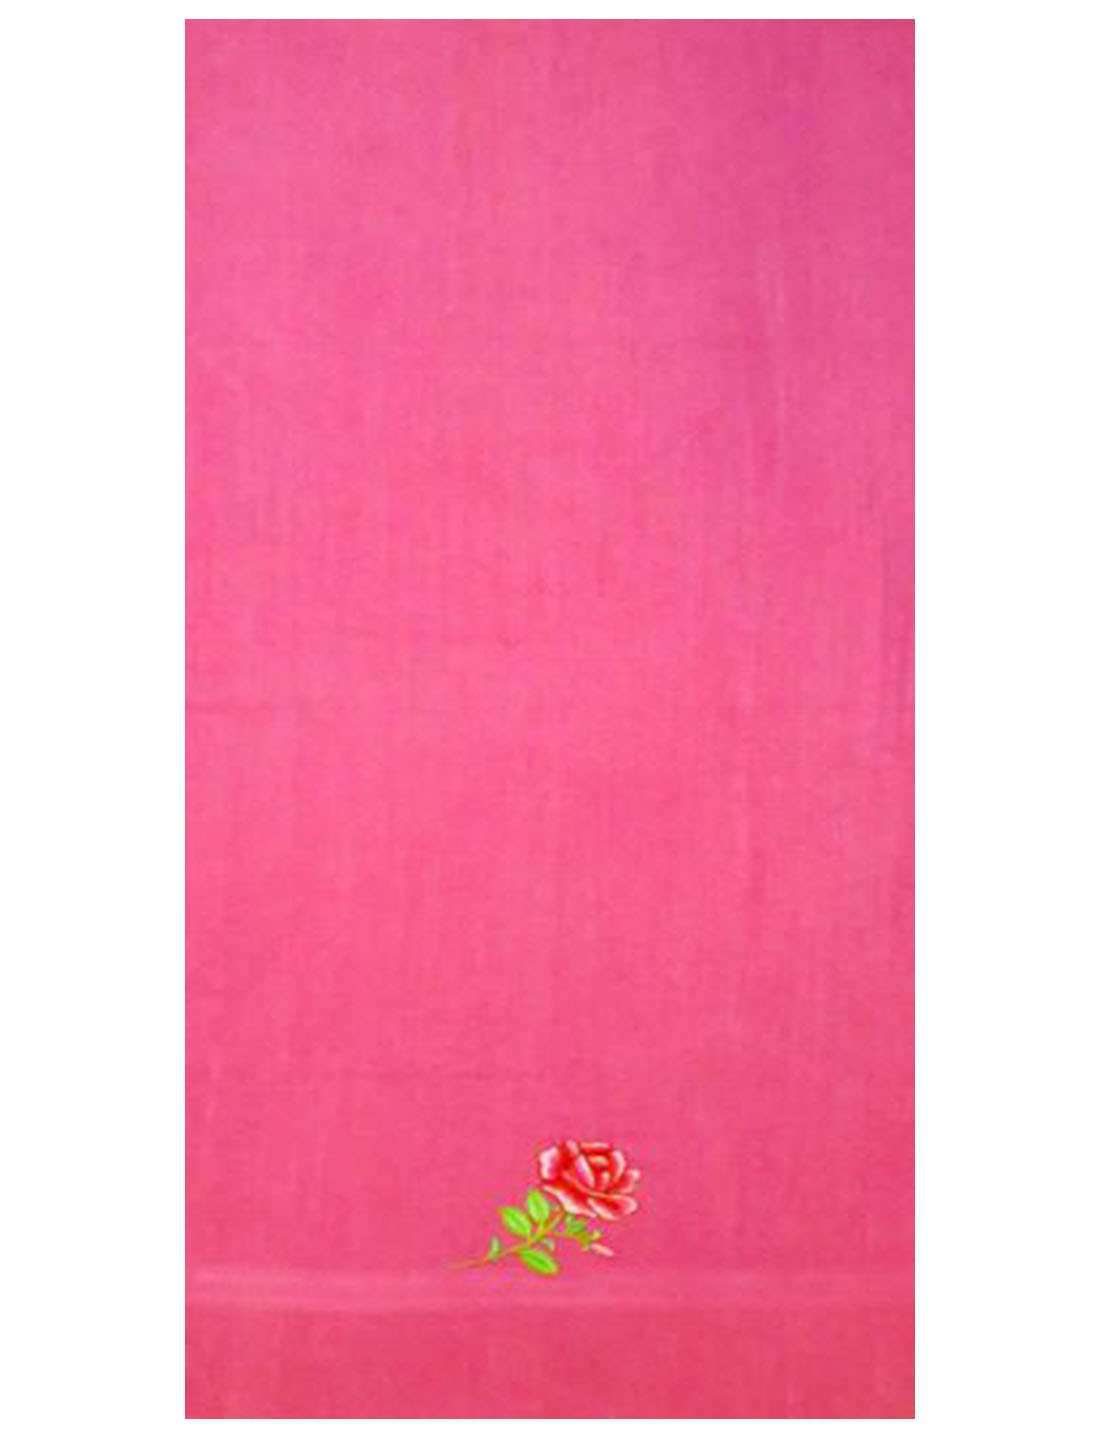 Полотенце махровое 70х140 ПБ-8 (розовый)